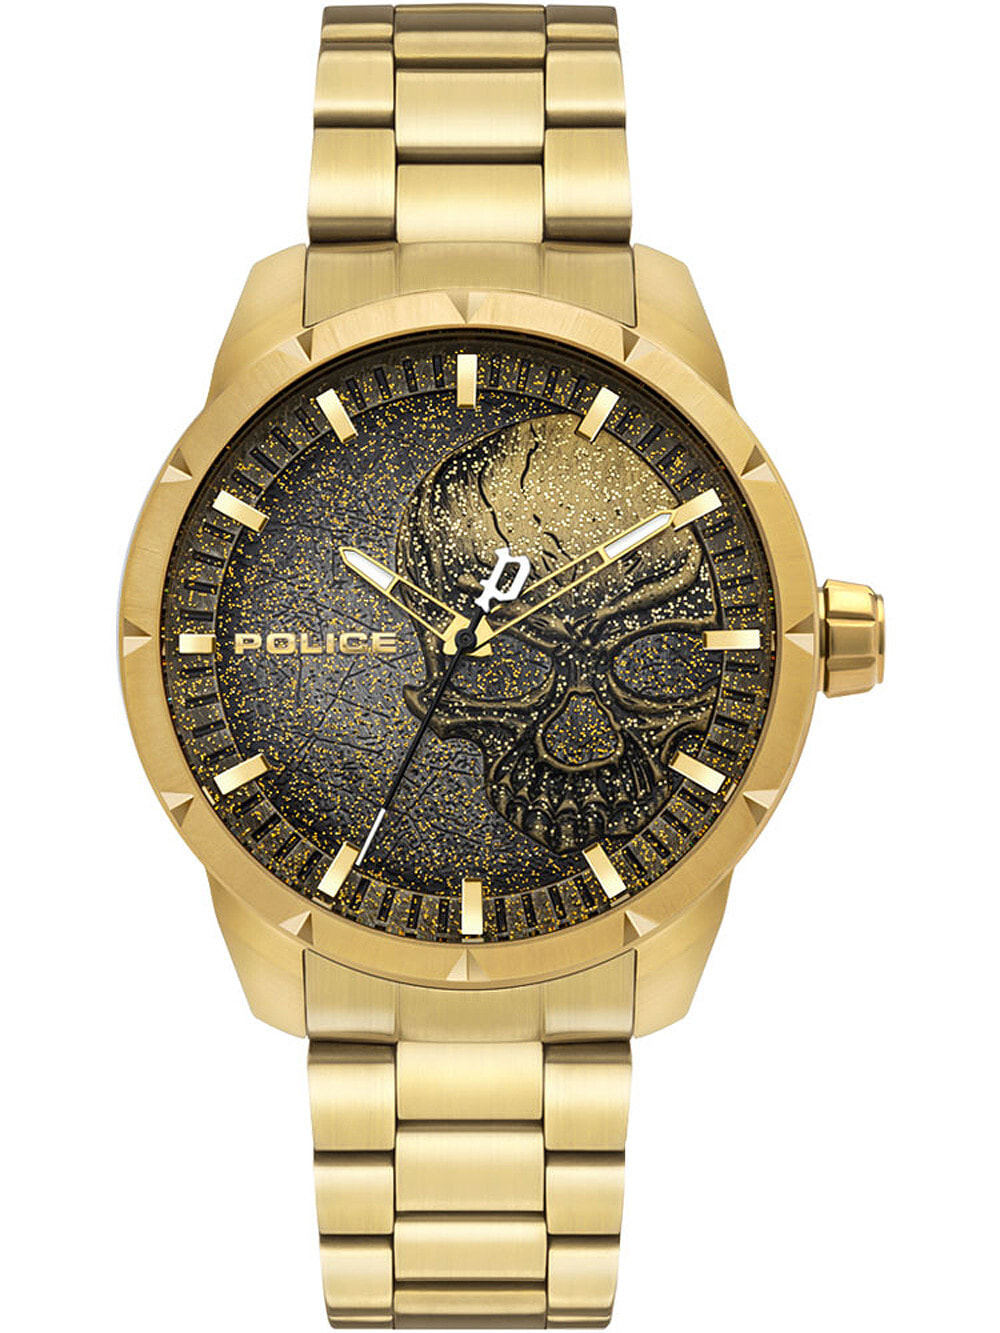 Мужские наручные часы с золотистым браслетом Police PL15715JSG.02AM Neist mens 46mm 3ATM